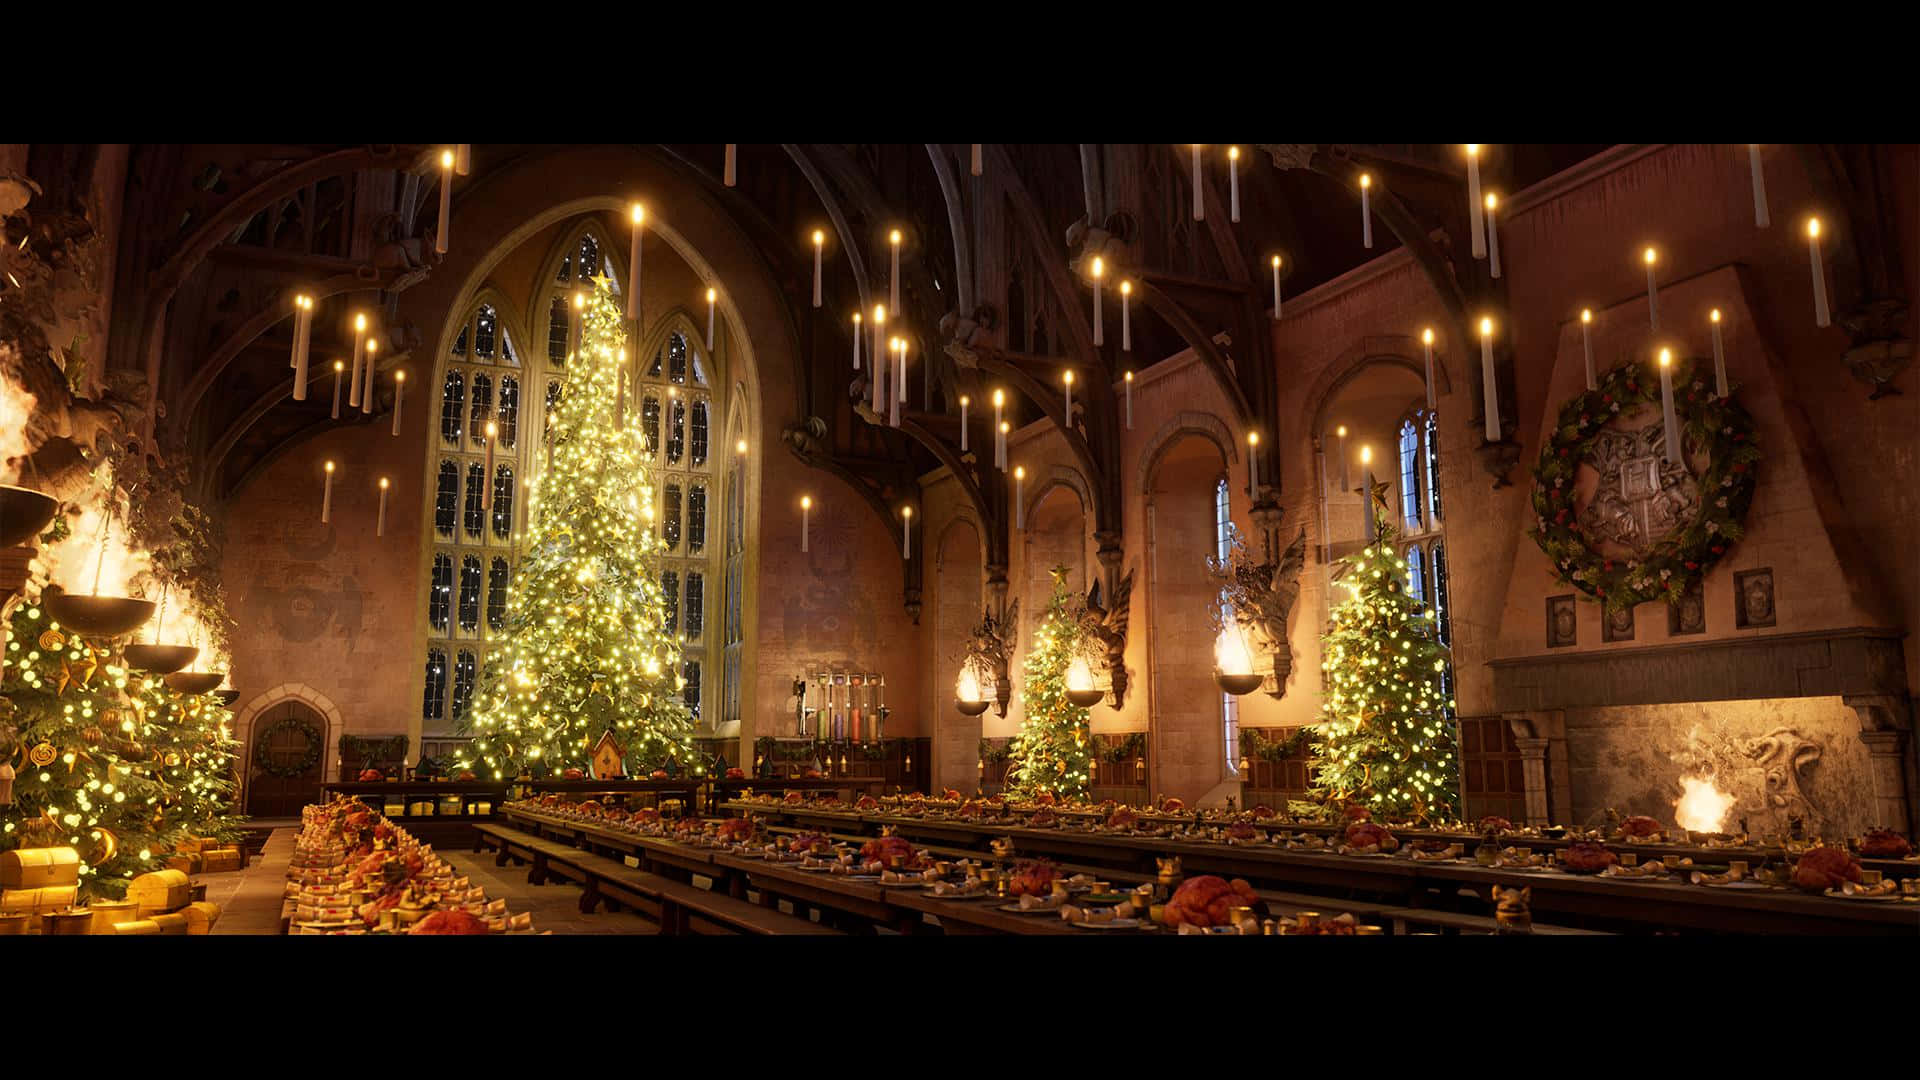 Stunning Great Hall from Harry Potter Desktop Wallpaper Wallpaper